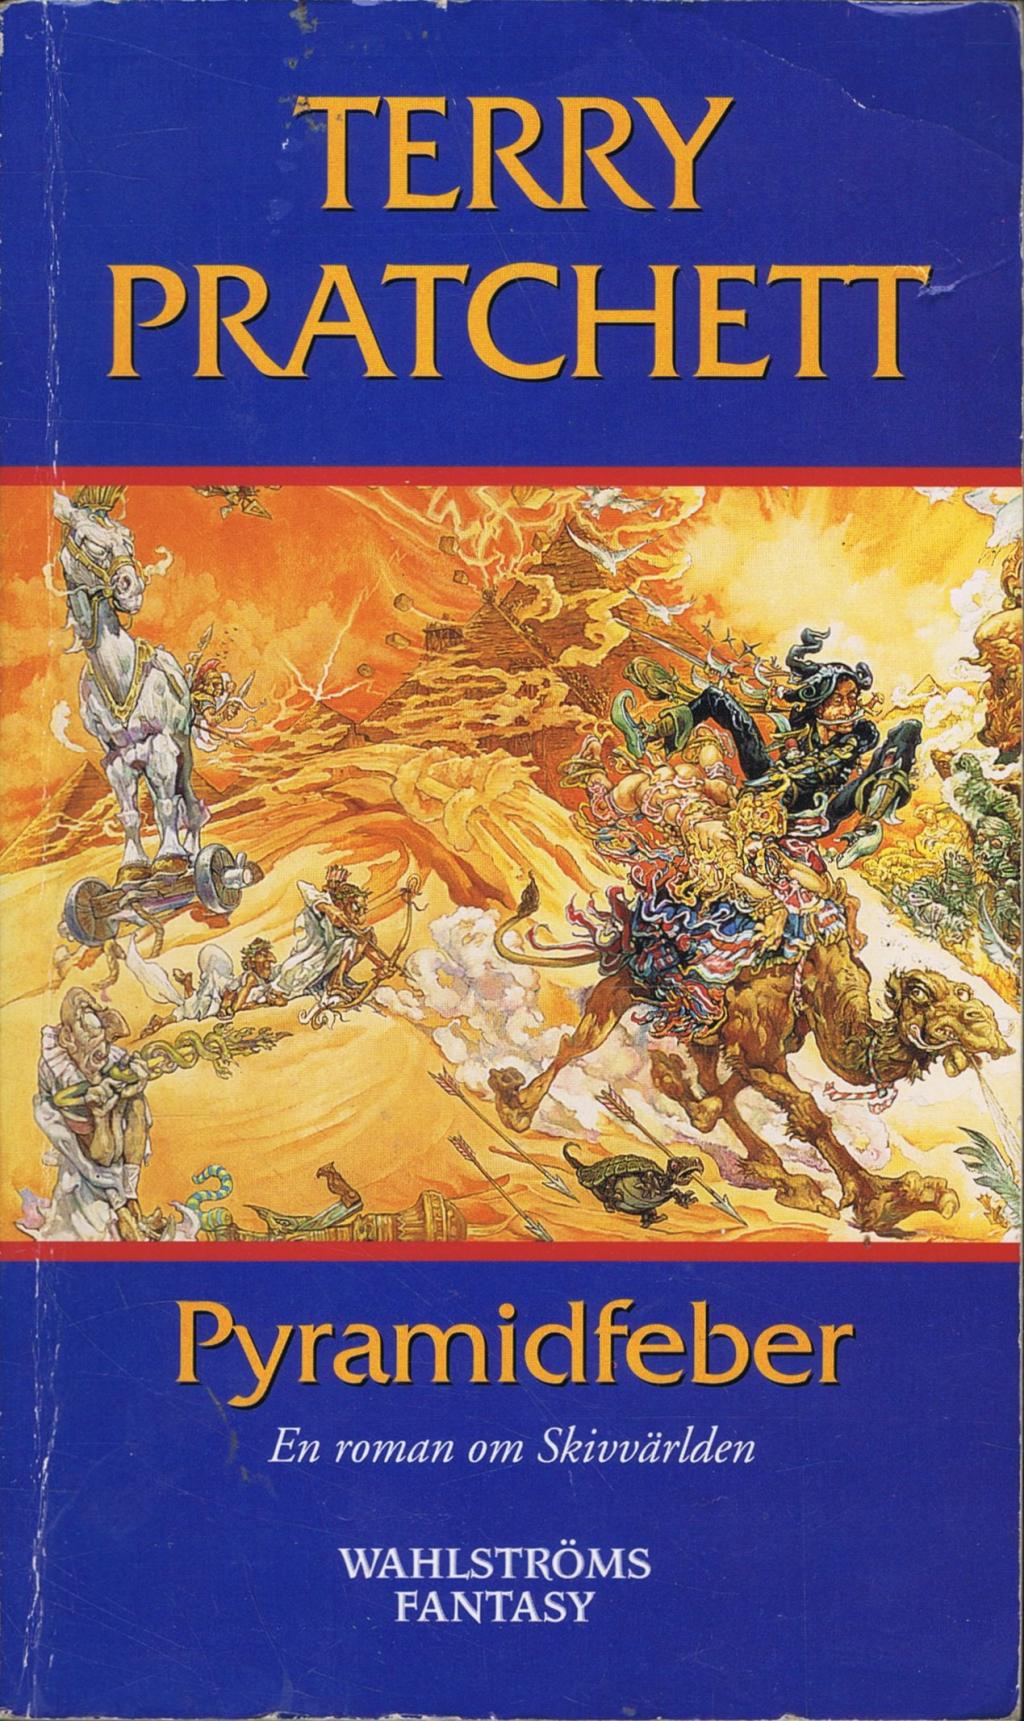 Pyramidfeber av Terry Pratchett (Pocket) - Fantasyhyllan